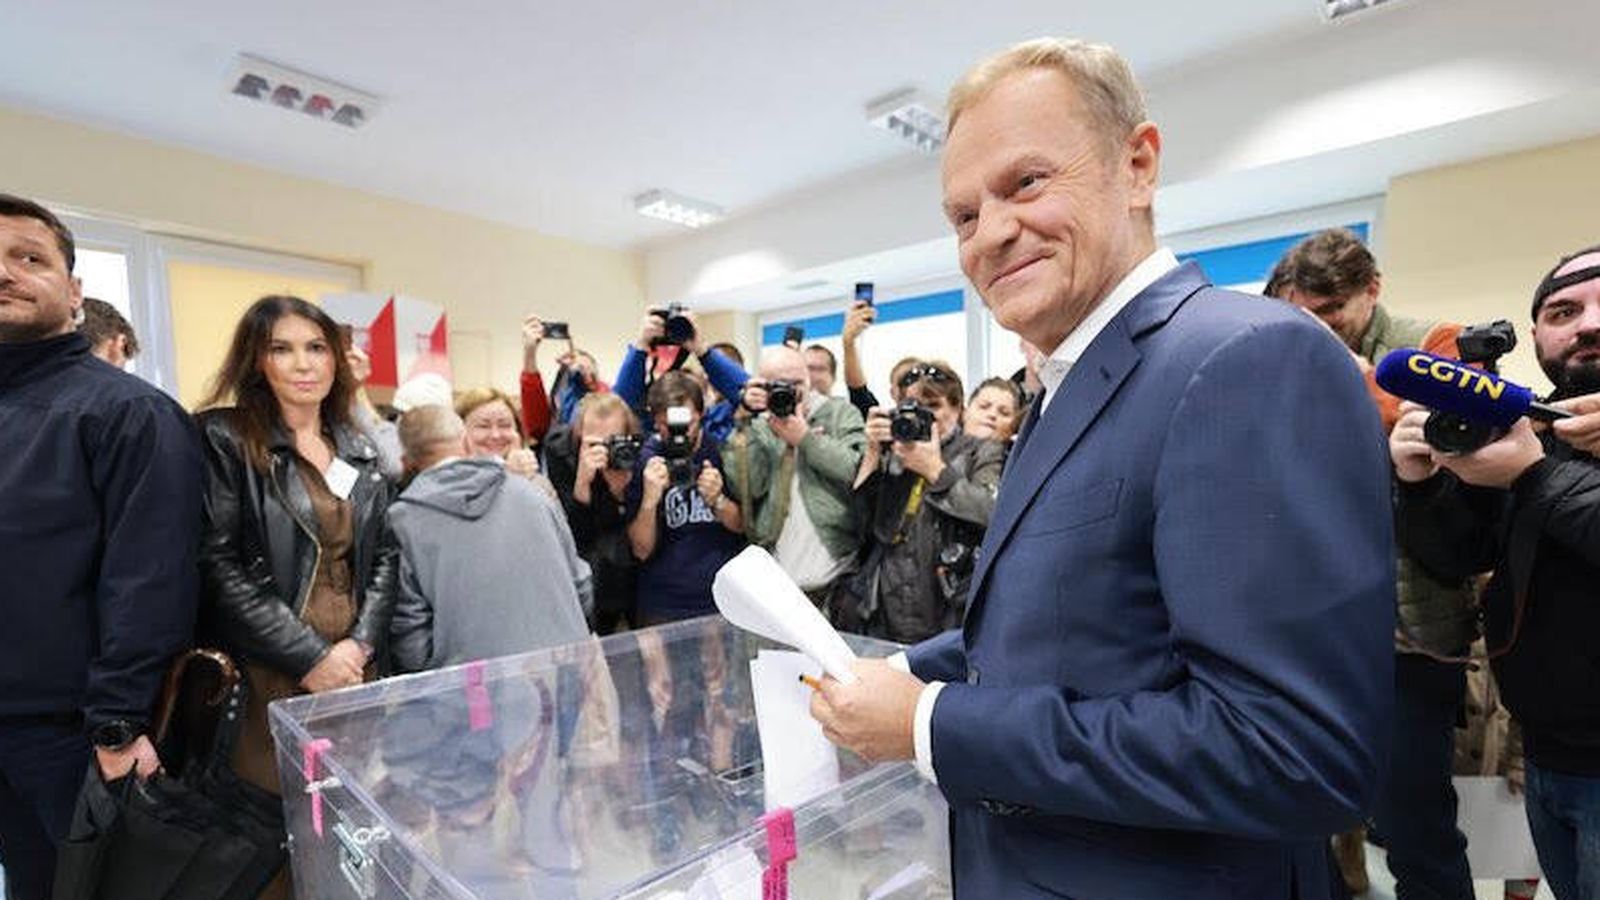 La coalición opositora de Donald Tusk ganó las elecciones polacas. (Twitter)